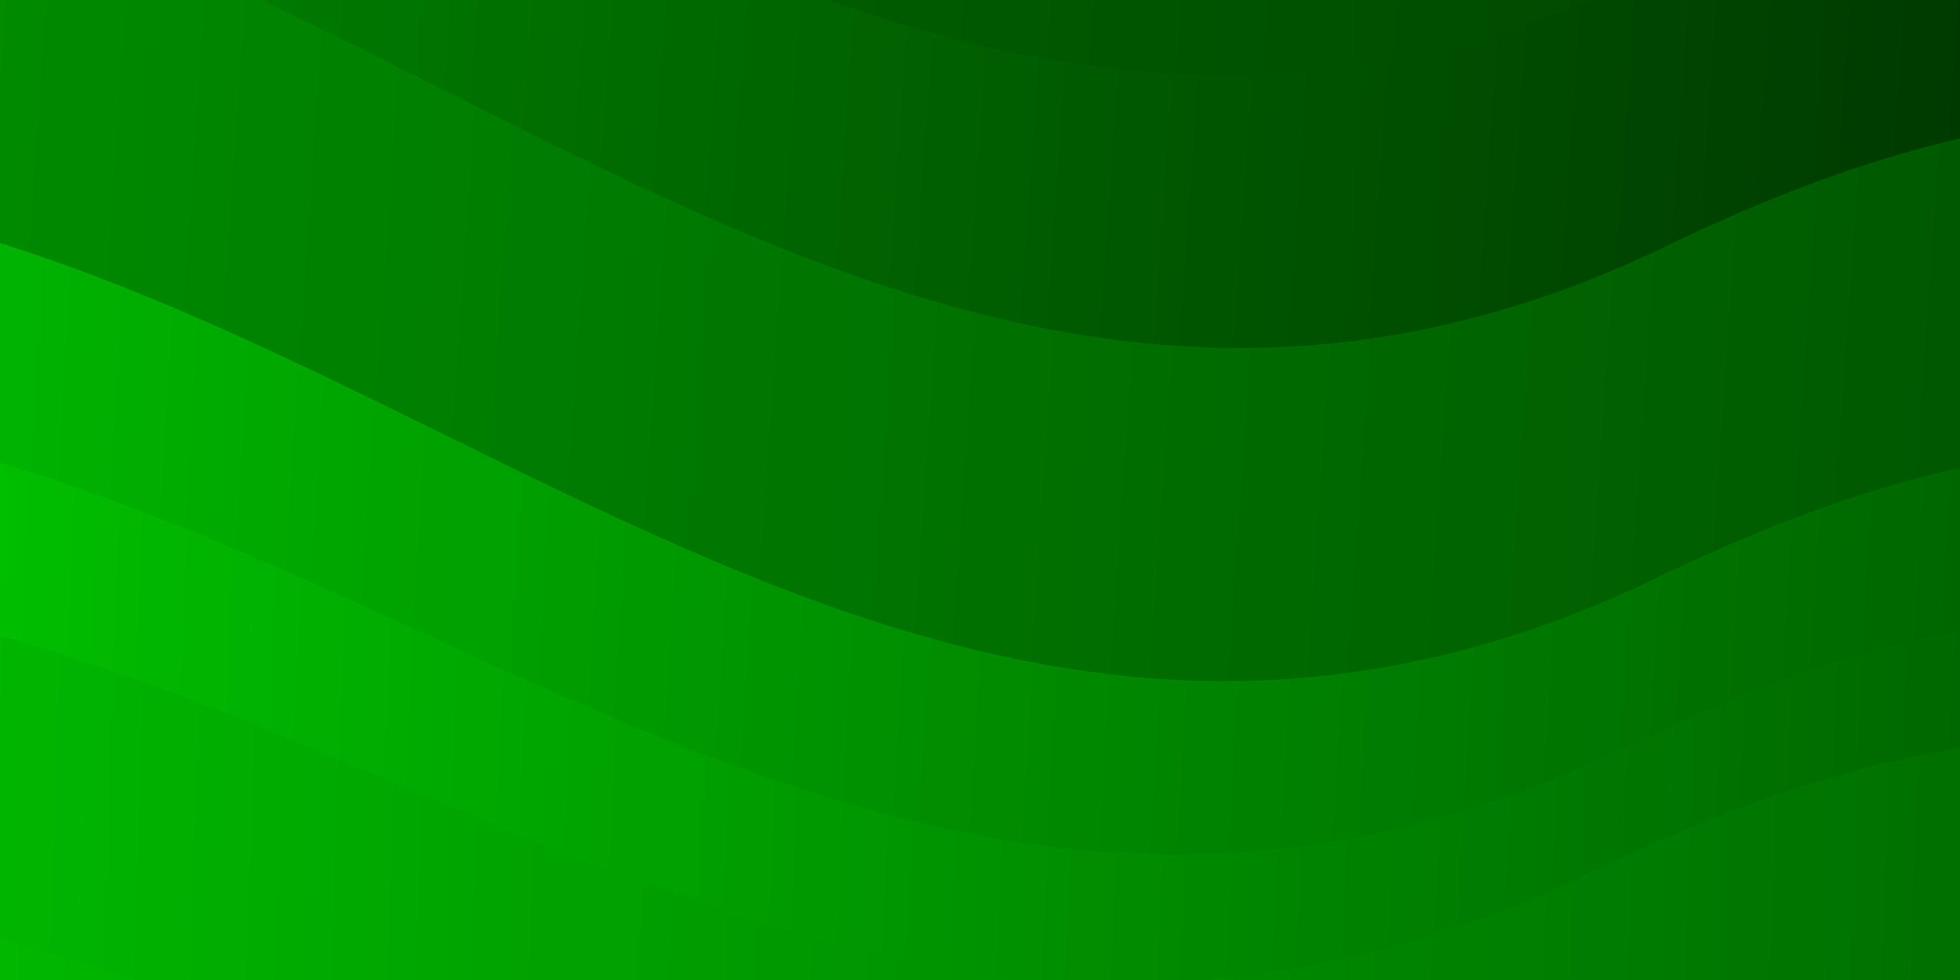 plantilla de vector verde claro con líneas curvas. colorida ilustración en estilo circular con líneas. patrón para sitios web, páginas de destino.